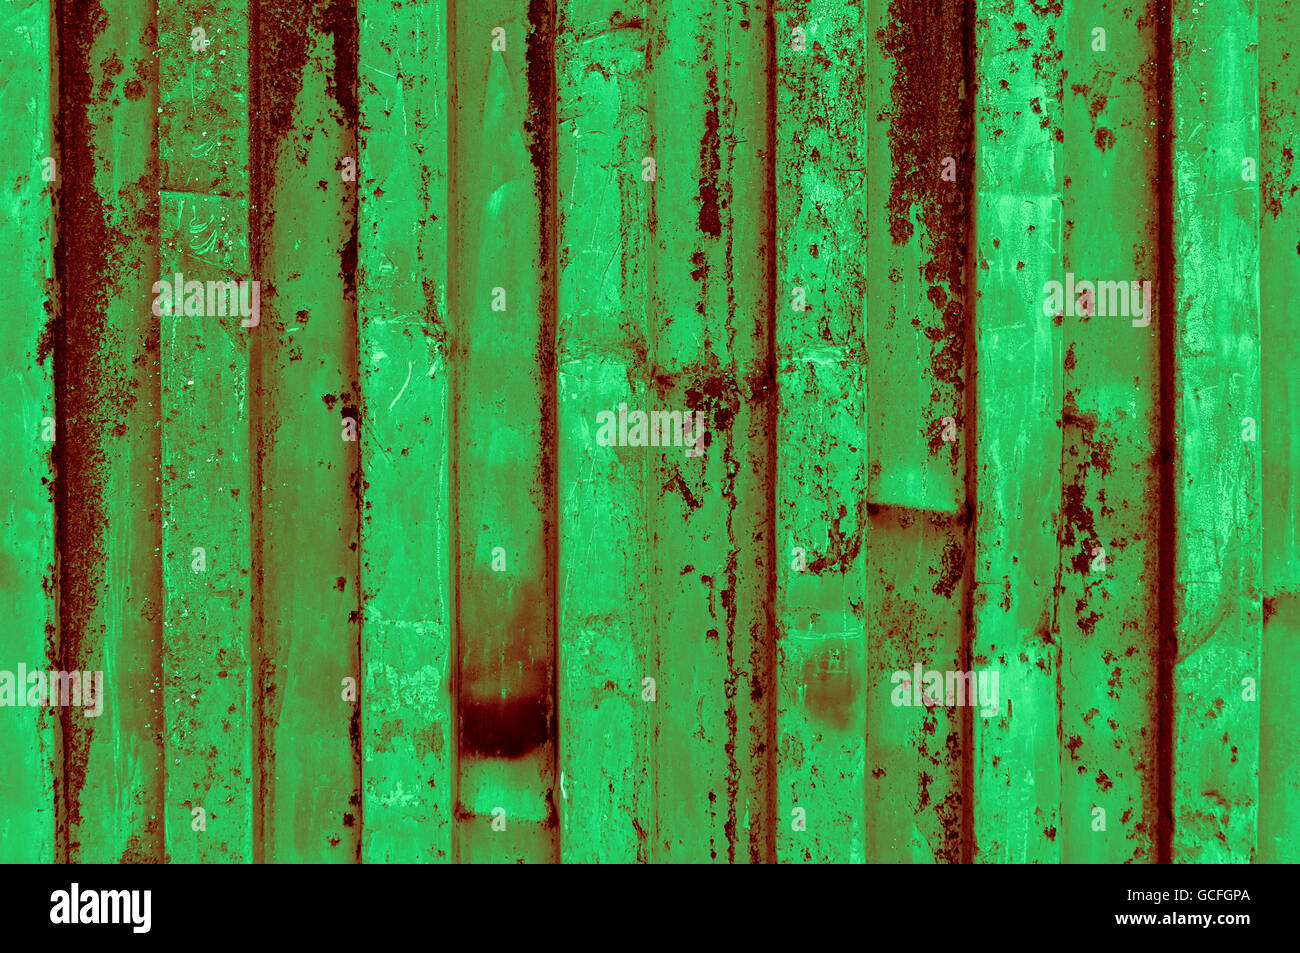 Ruvido e rusty luce verde scuro rossiccio verdastra di ferro ondulato della superficie metallica di close-up Foto Stock